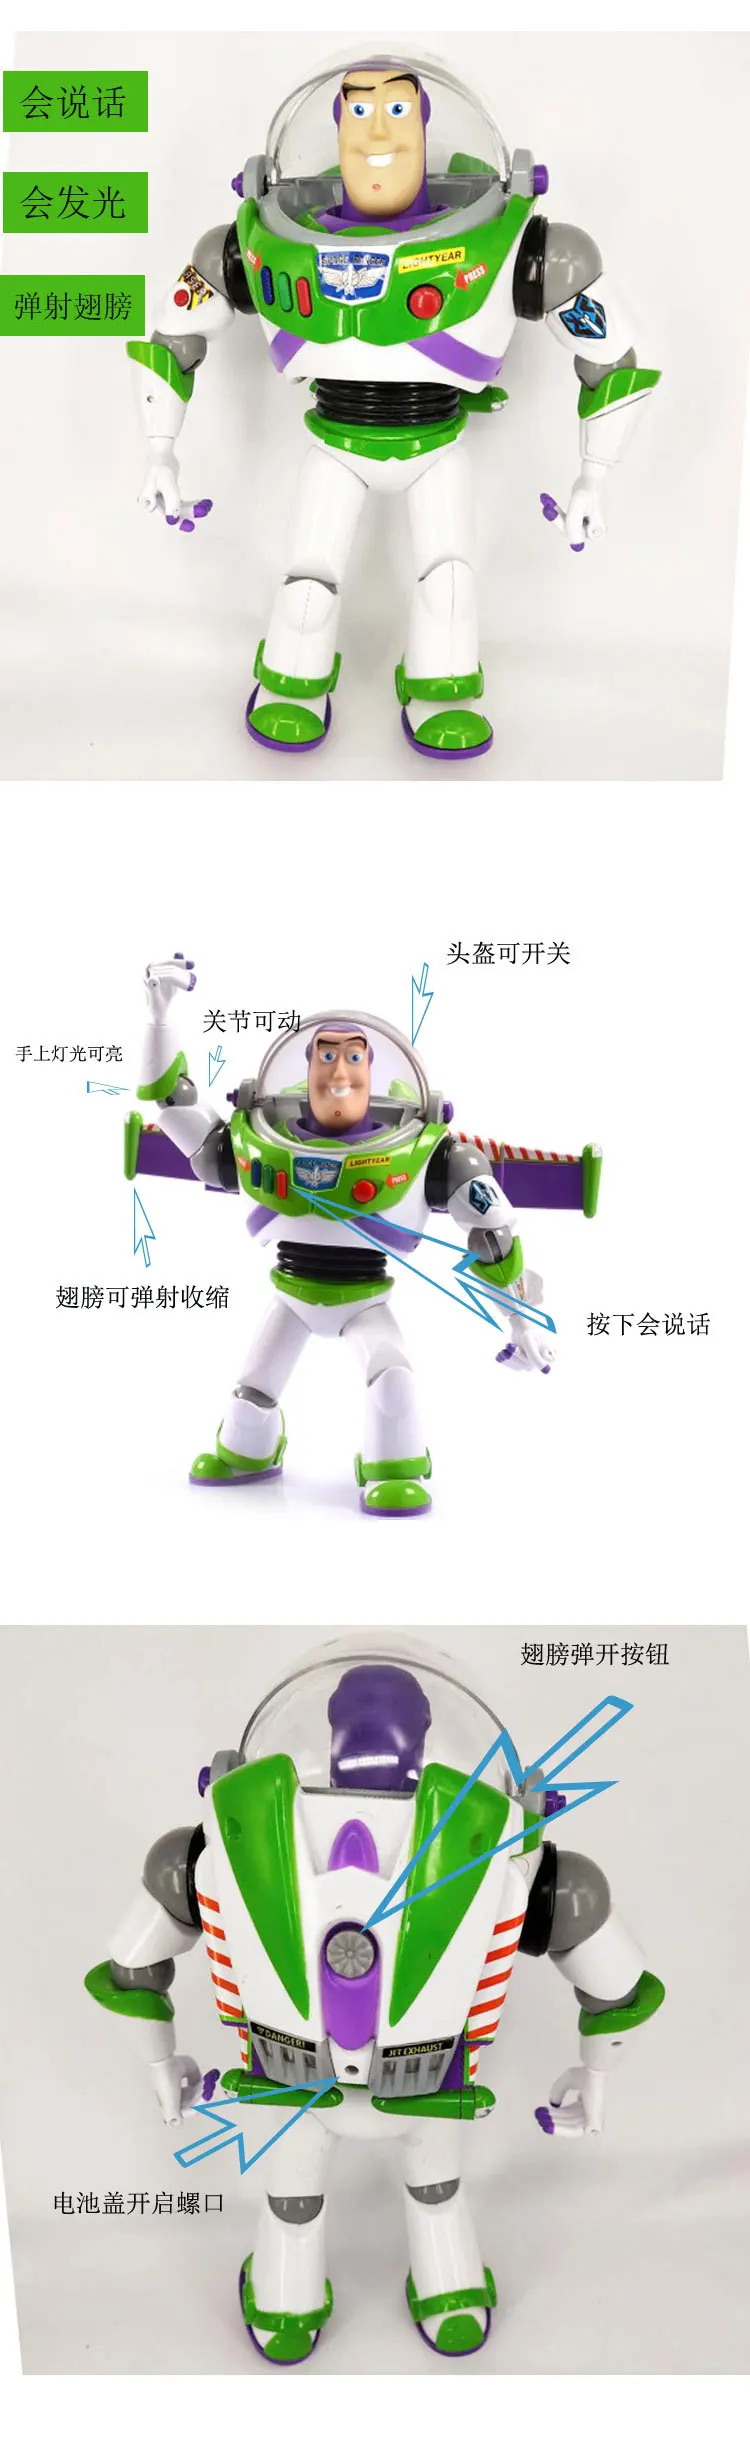 Игрушка "Дисней" История 4 игрушки Pixar Buzz Lightyear Can talk Woody Forky Alien Аниме Фигурки игрушки для детей подарок на день рождения